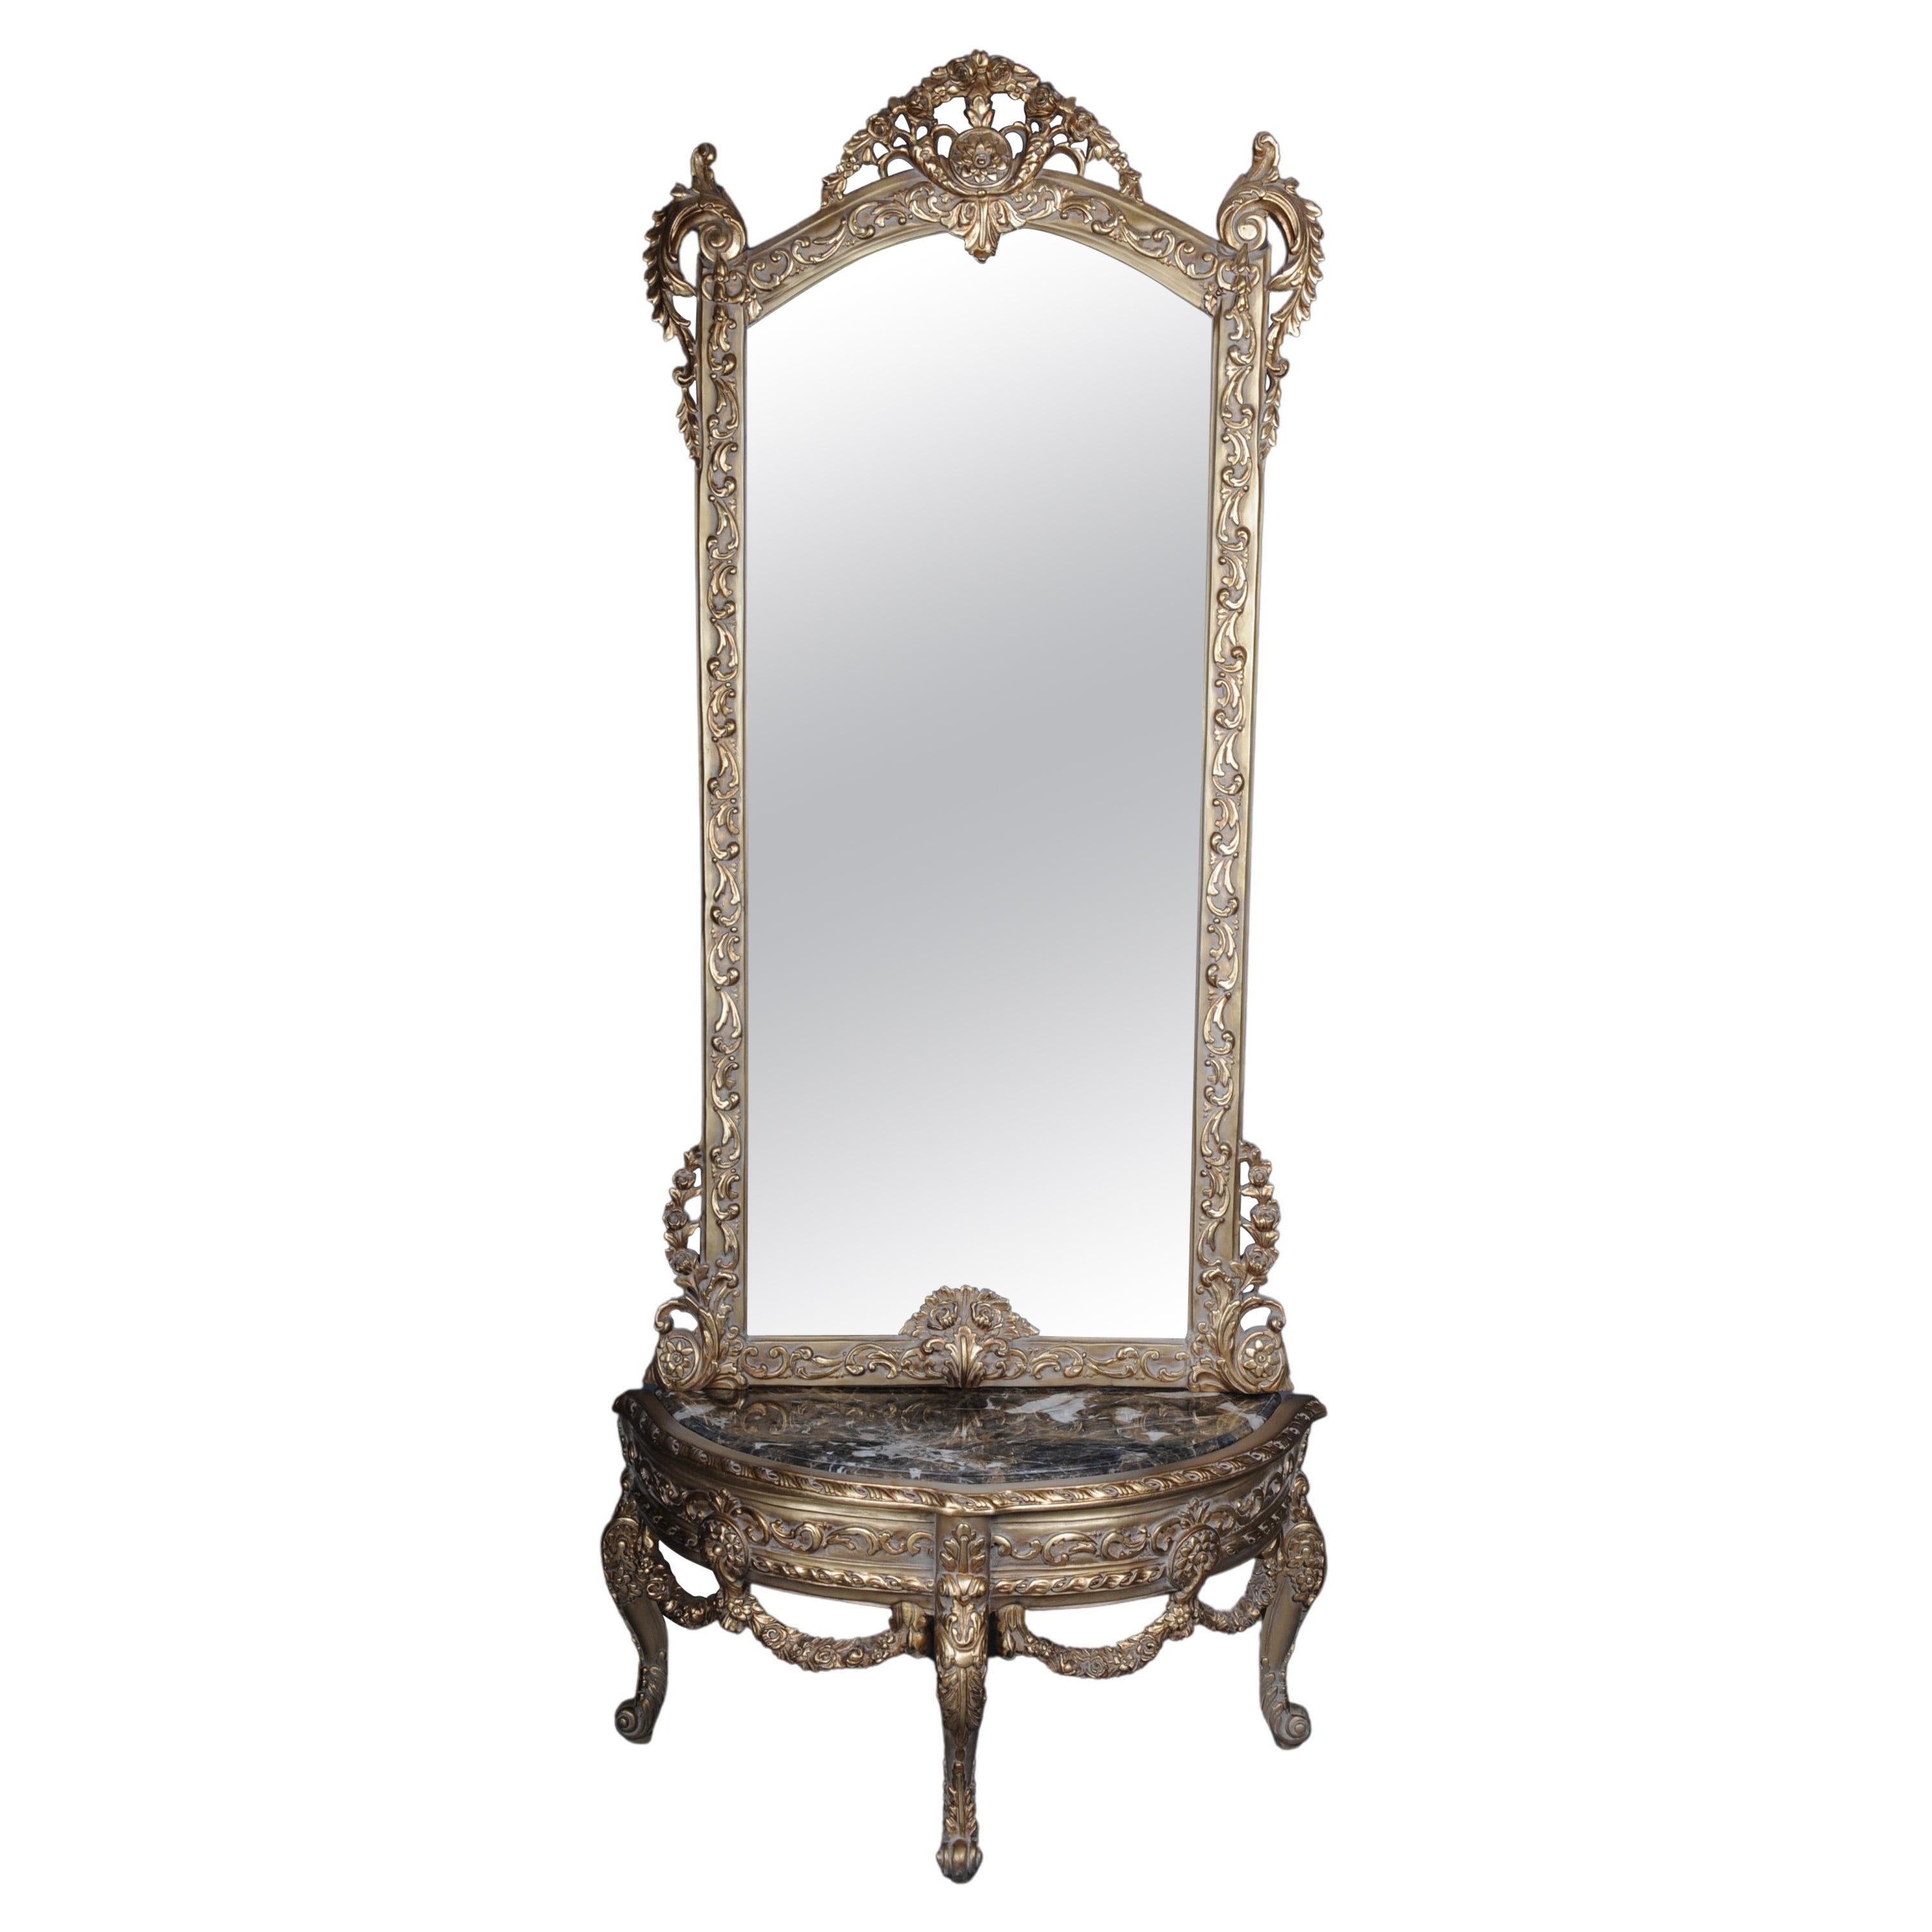 Magnifique miroir/ miroir de salon du XXe siècle de style Louis XV, doré